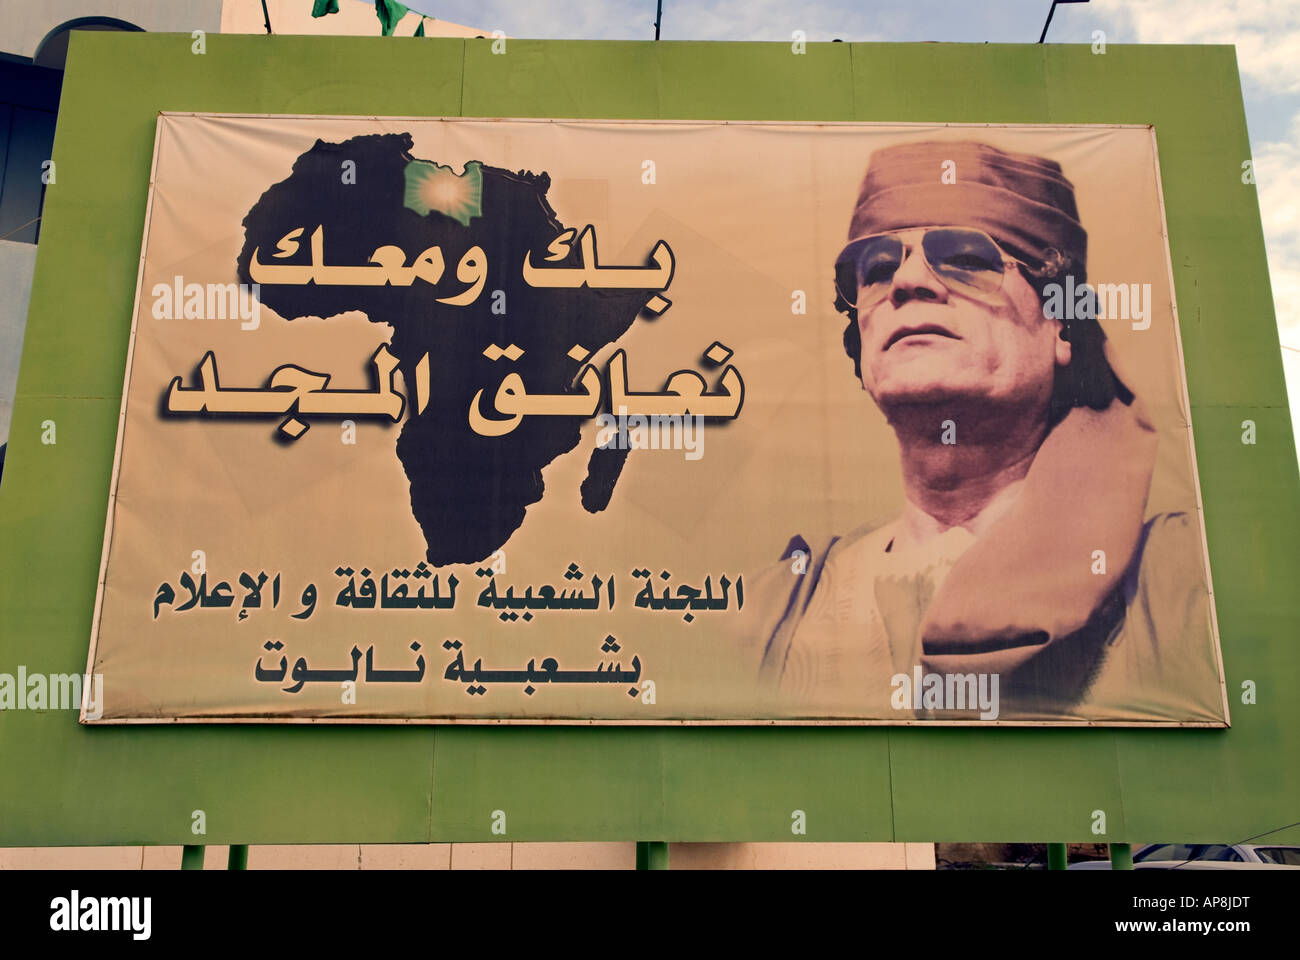 Propaganda poster for Libyan leader Muammar Qaddafi, Nalut, Libya. Stock Photo